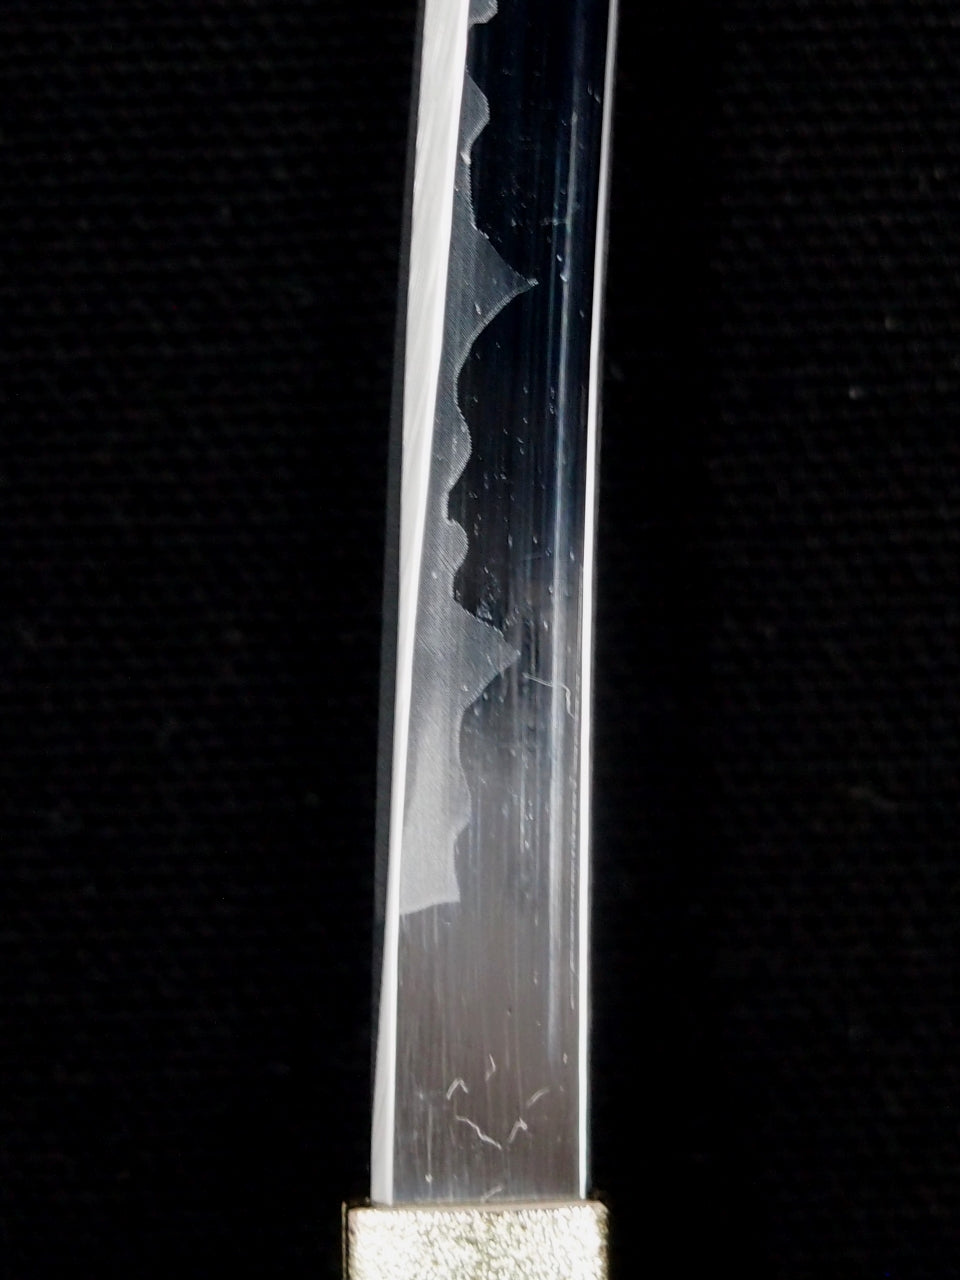 Letter Opener SAMURAI KATANA SWORD Knife Desk Decor item 8 inch Length Safe Edge Maeda Keiji Model Black Grip MT-32K - JAPANESE GIFTS 